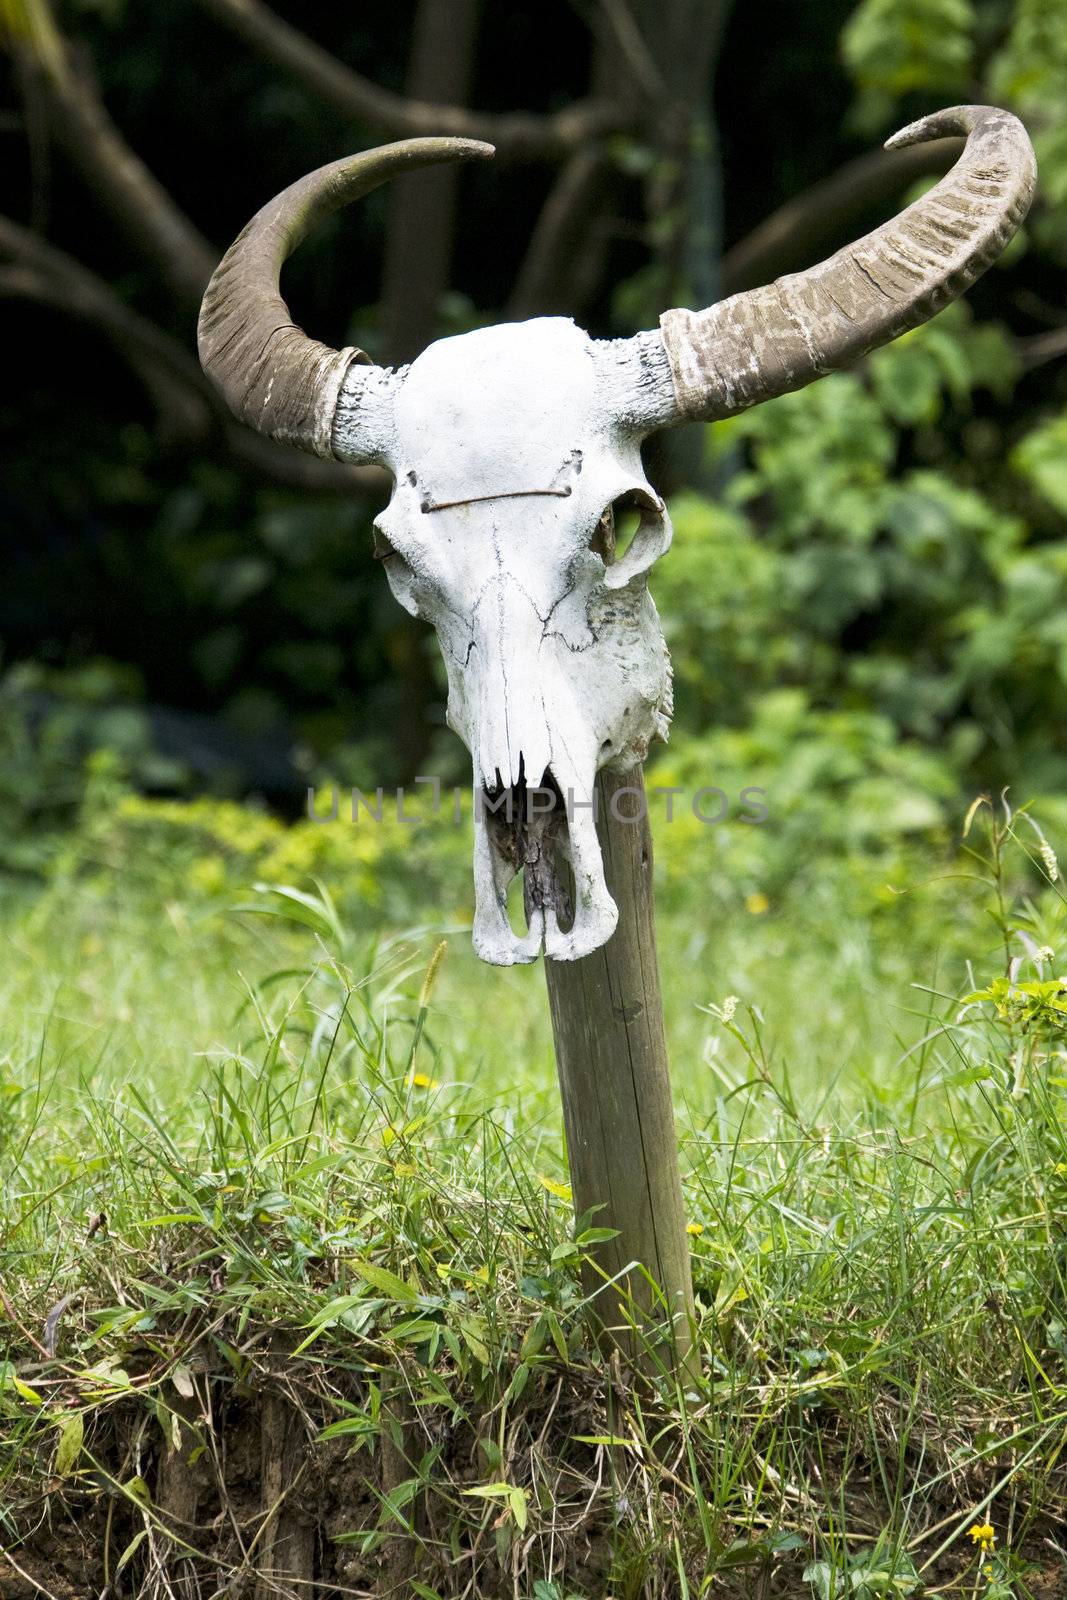 Image of a water buffalo skull at a farm located at Guilin, China.